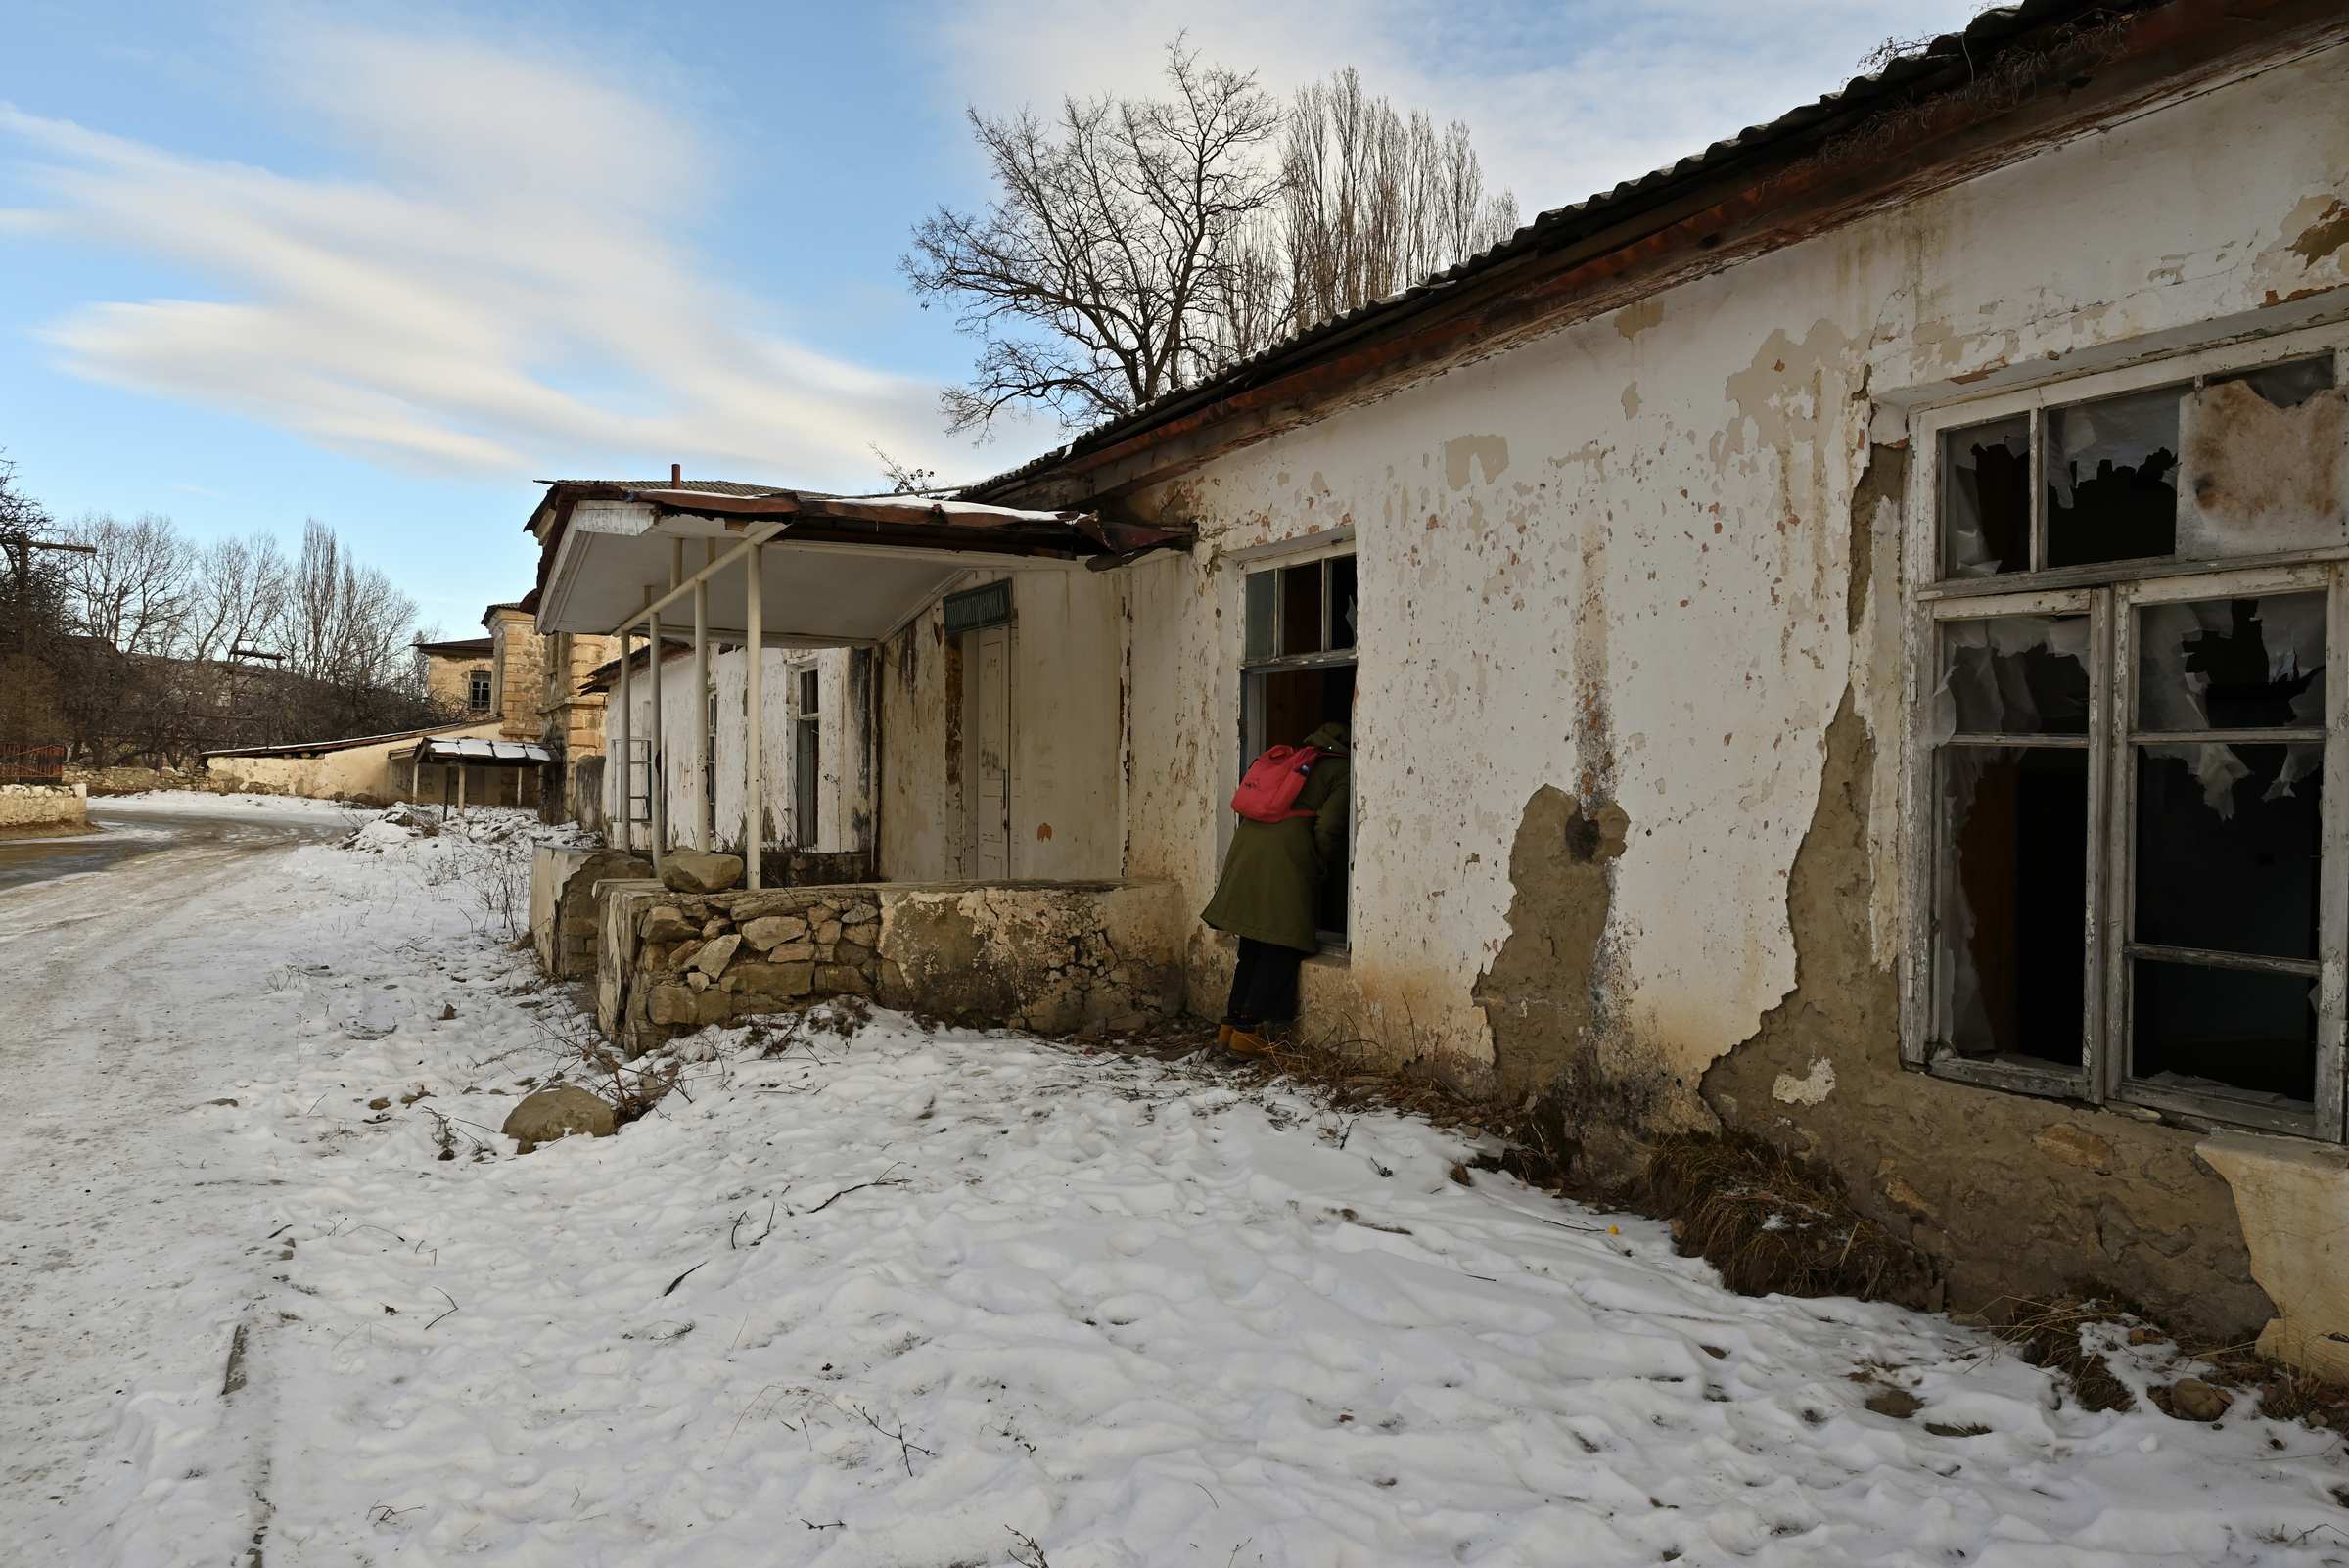 Дагестан. Заброшенная хунзахская поликлиника на территории крепости.